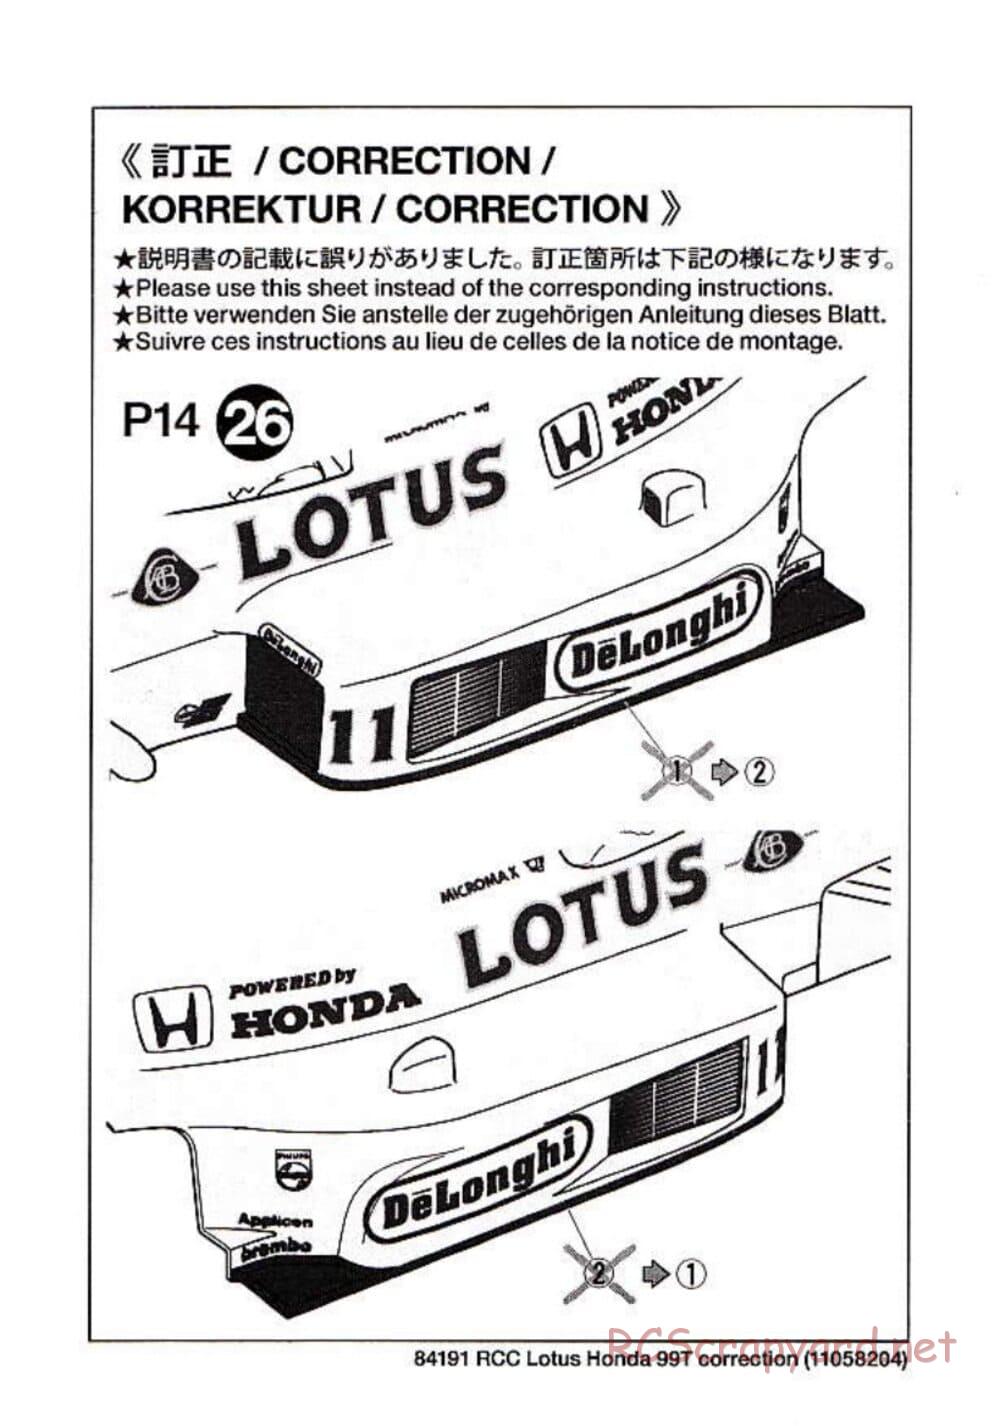 Tamiya - Team Lotus 99T Honda - F103 Chassis - Manual - Page 21